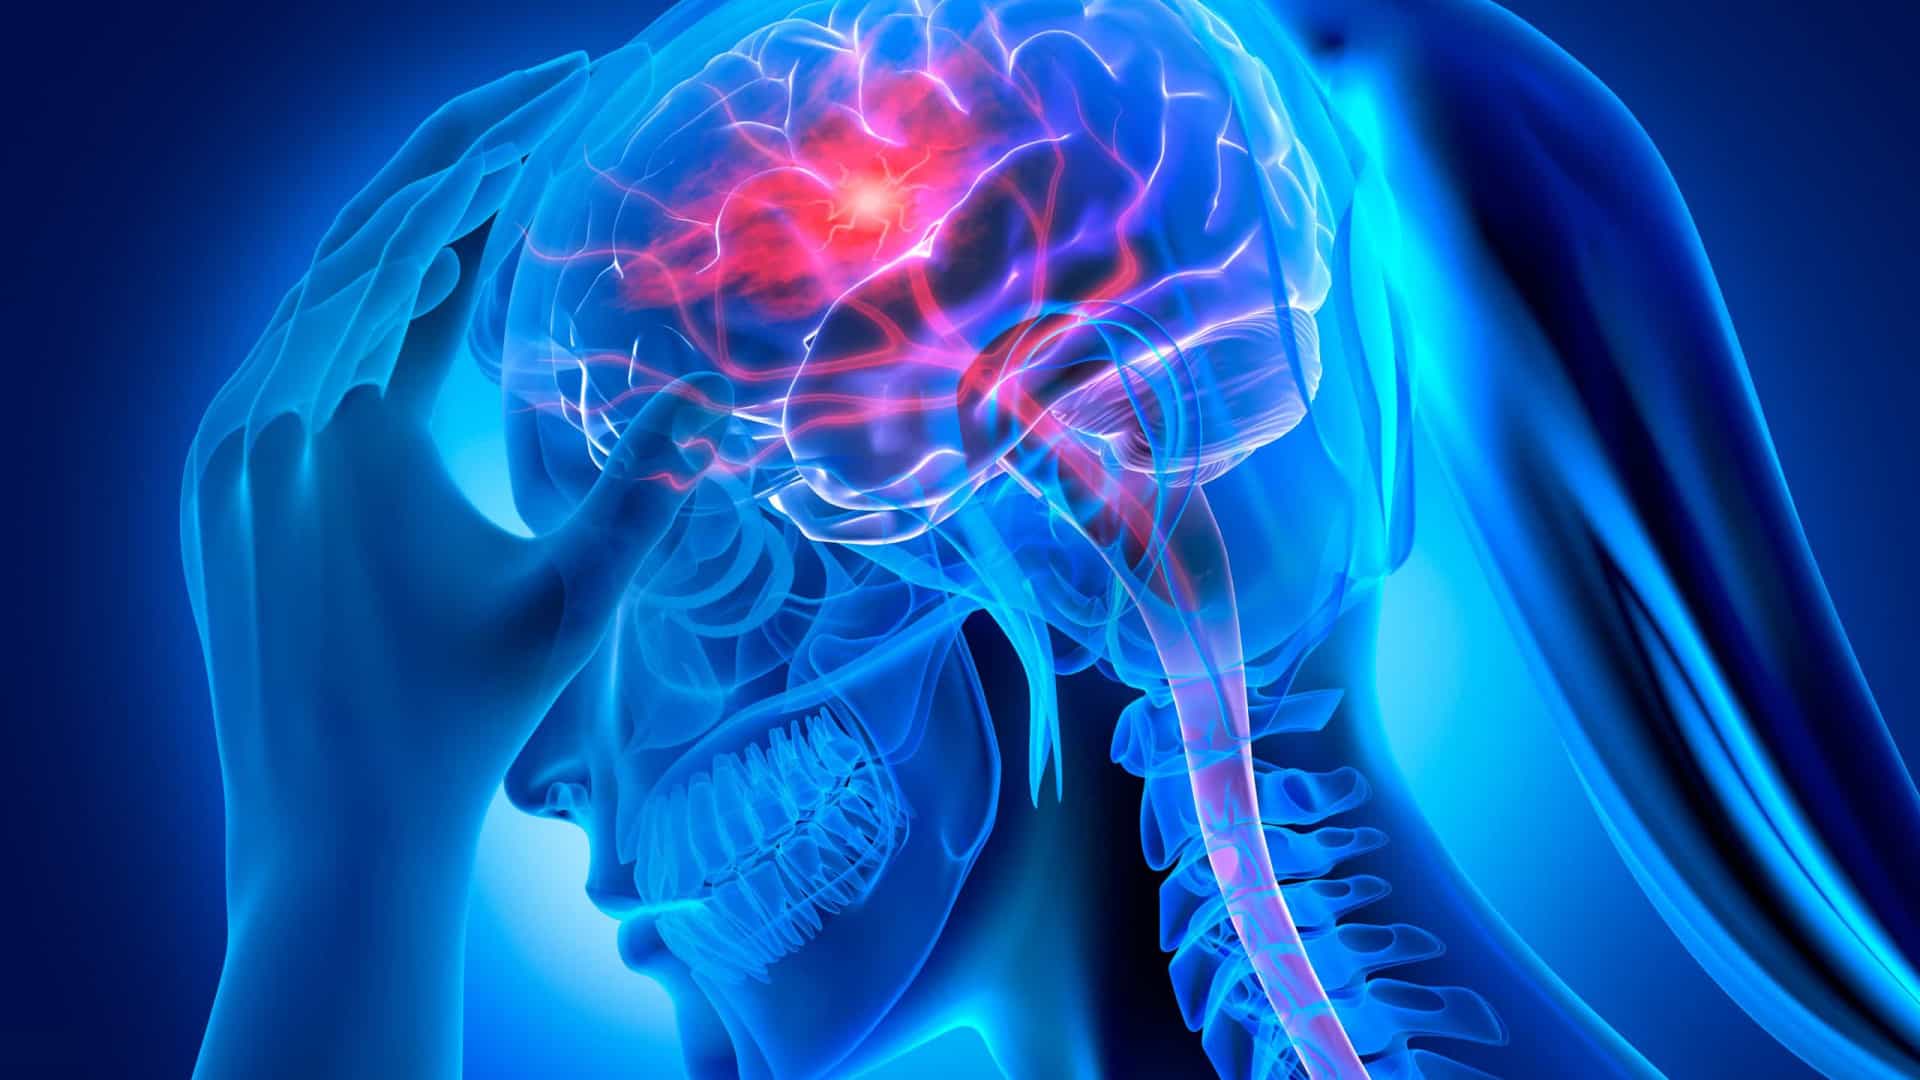 Preste atenção: Sintomas alarmantes associados a tumores cerebrais